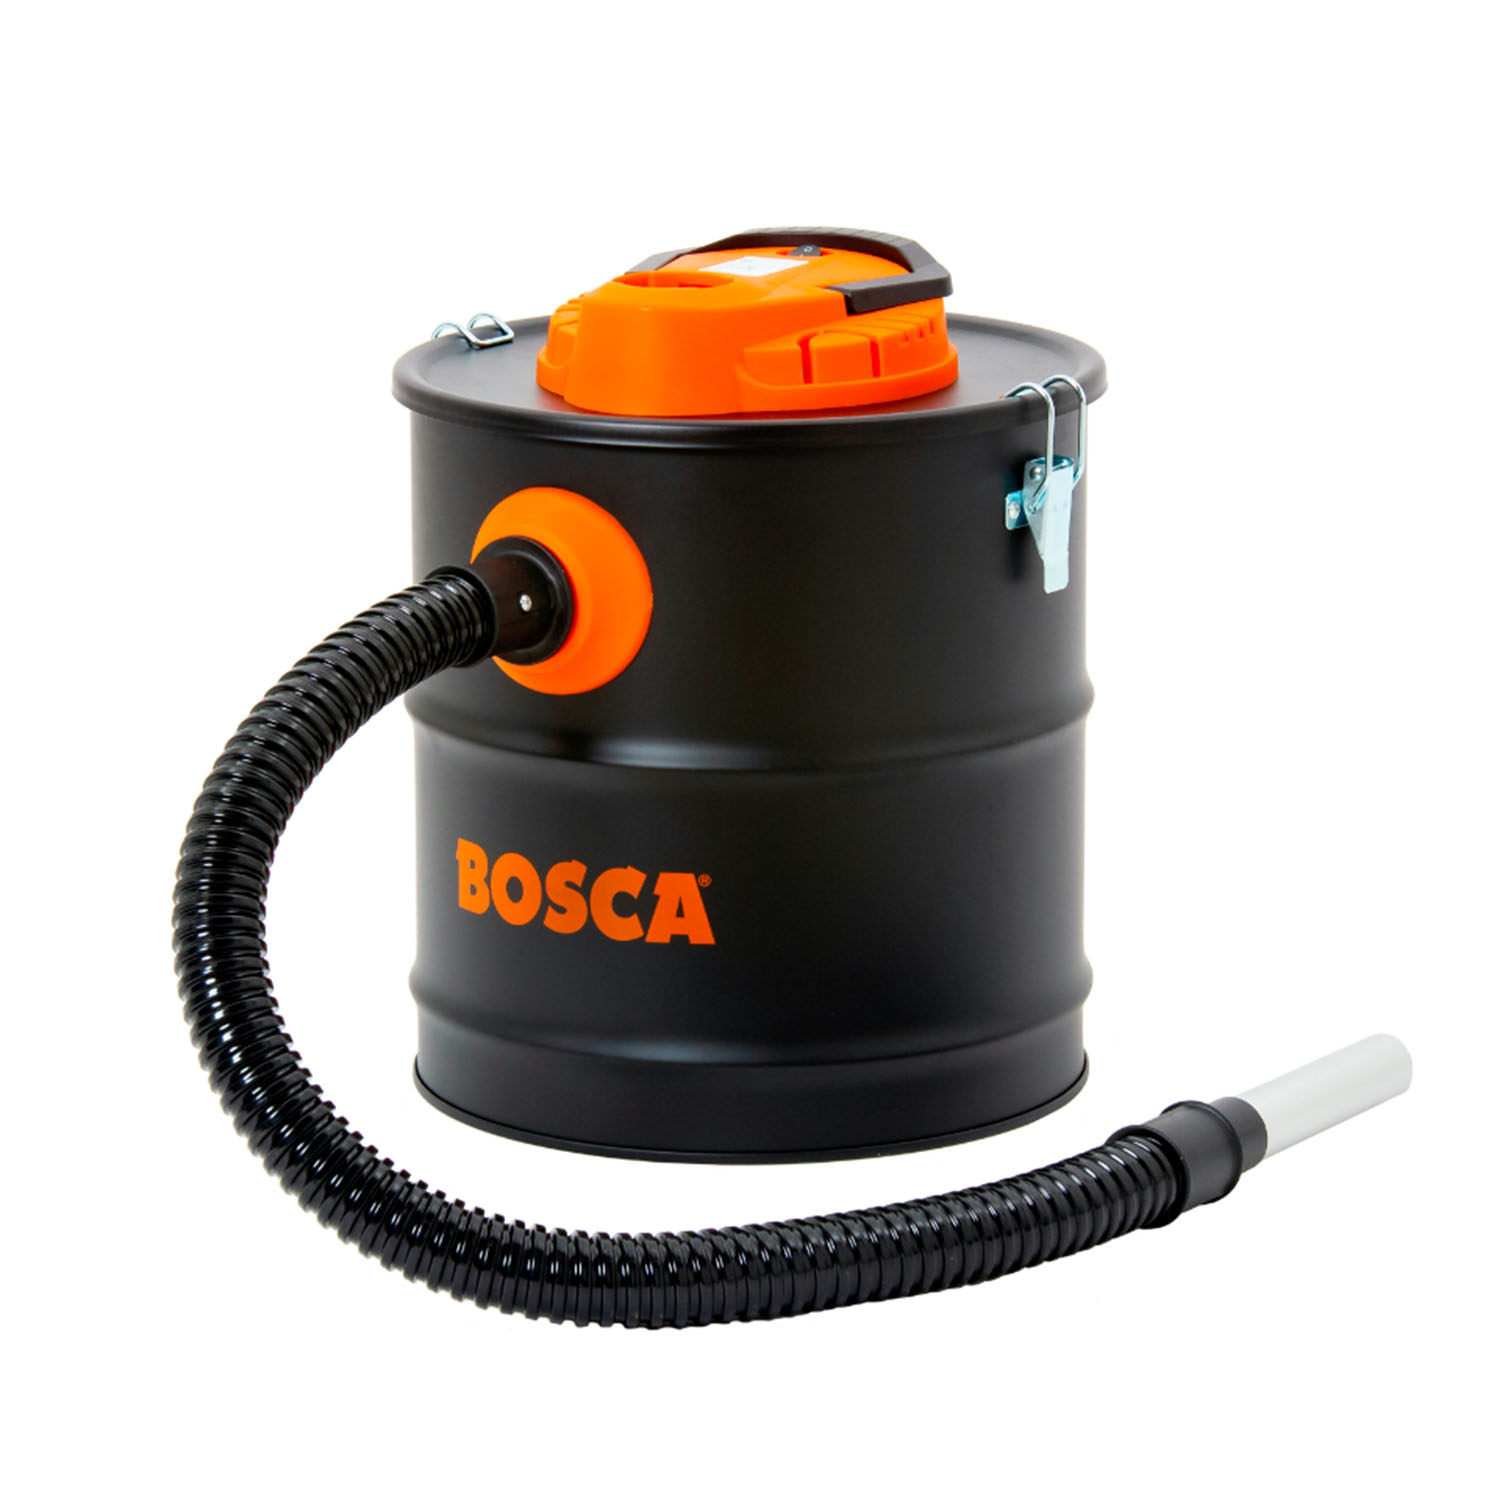 Bosca Chile - Perfecta para limpiar las cenizas en tu parrilla. 🔥 La  aspiradora de cenizas #Bosca contiene un filtro hepa con cubierta de malla  metálica para cenizas. Resiste hasta 40 °C.